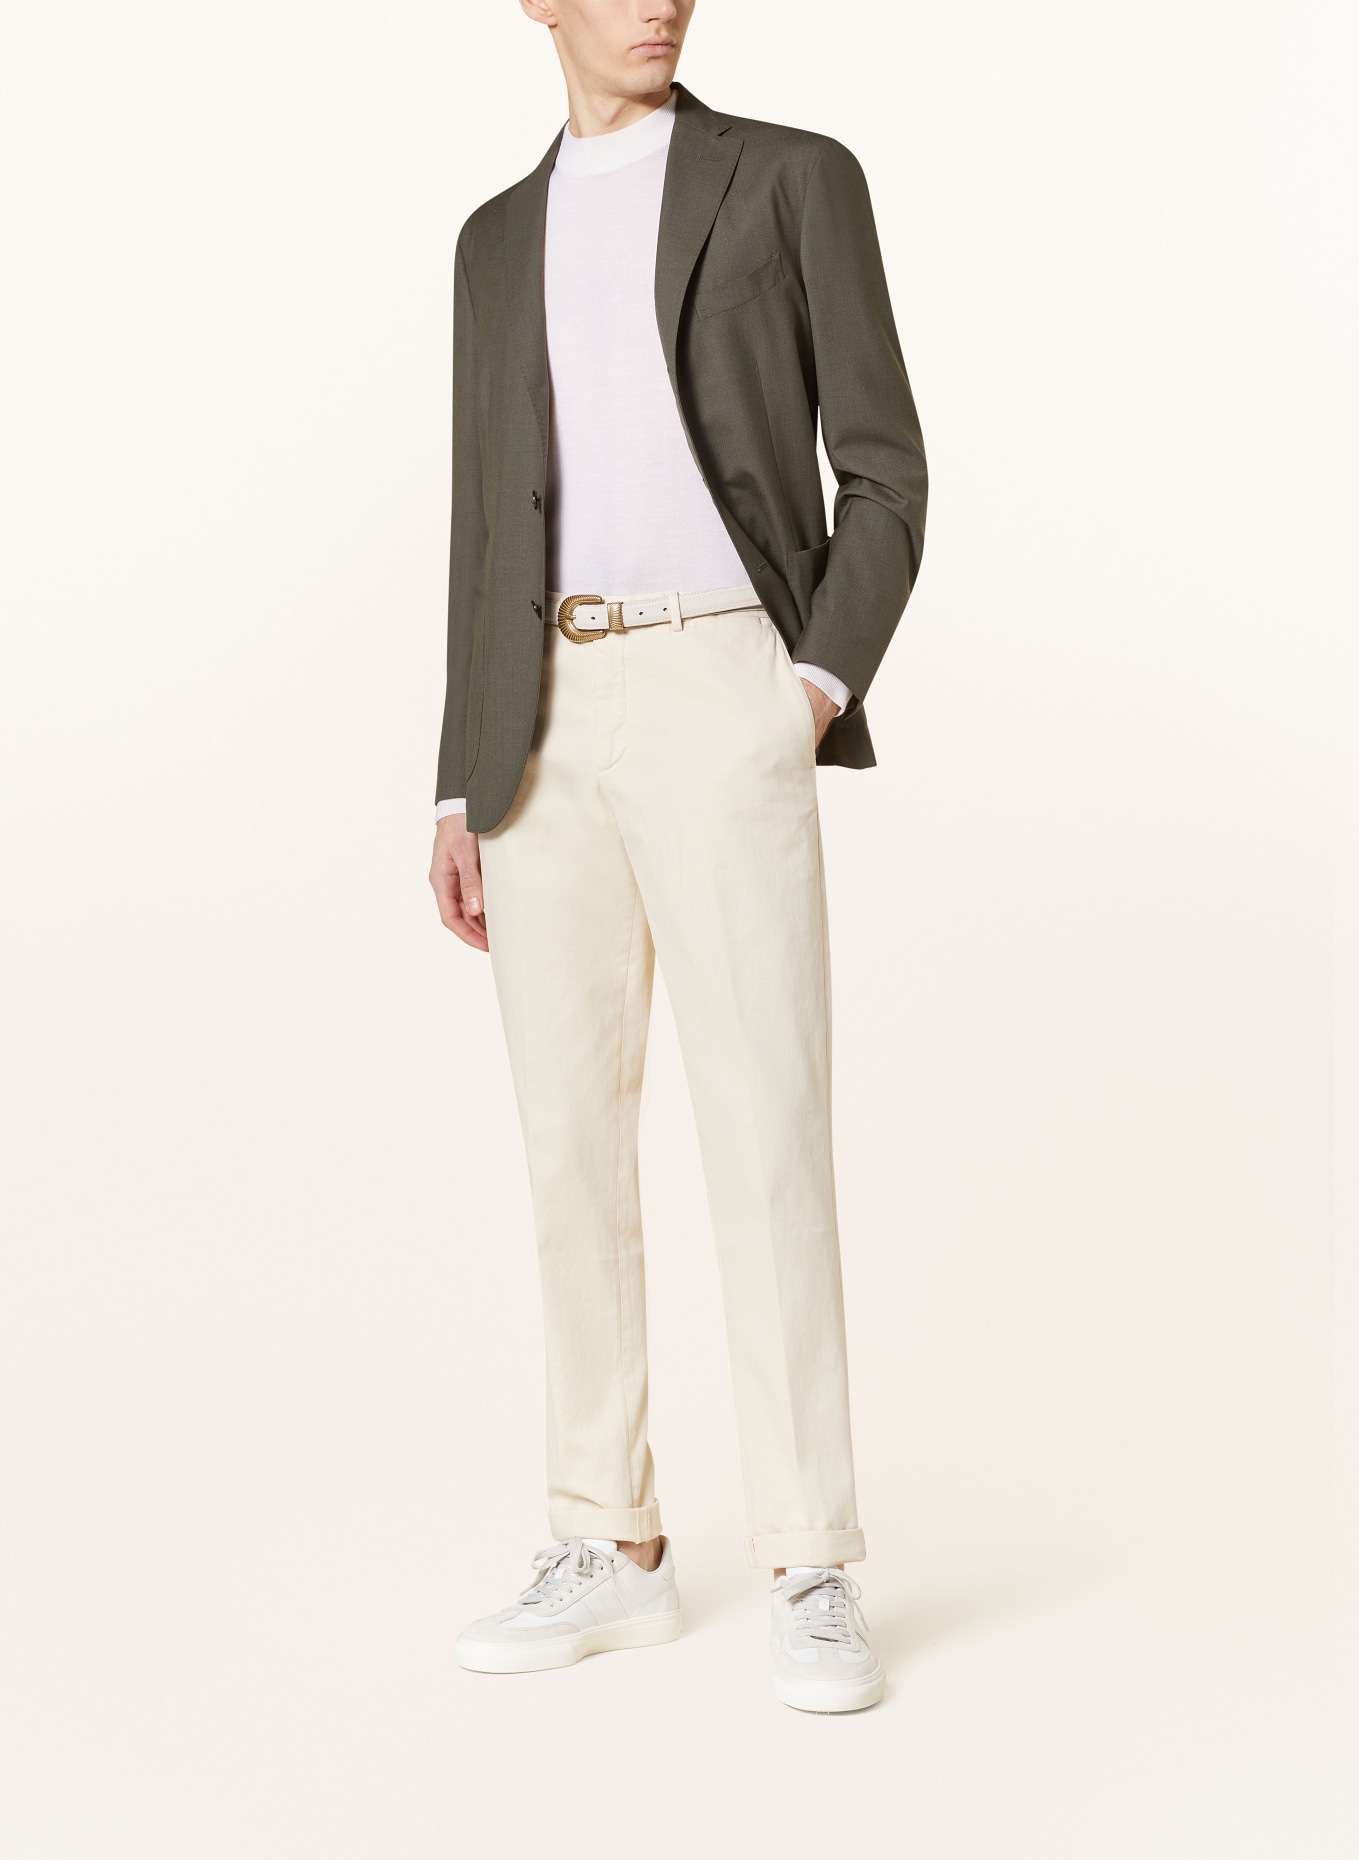 BOGLIOLI Tailored jacket slim fit, Color: OLIVE (Image 2)